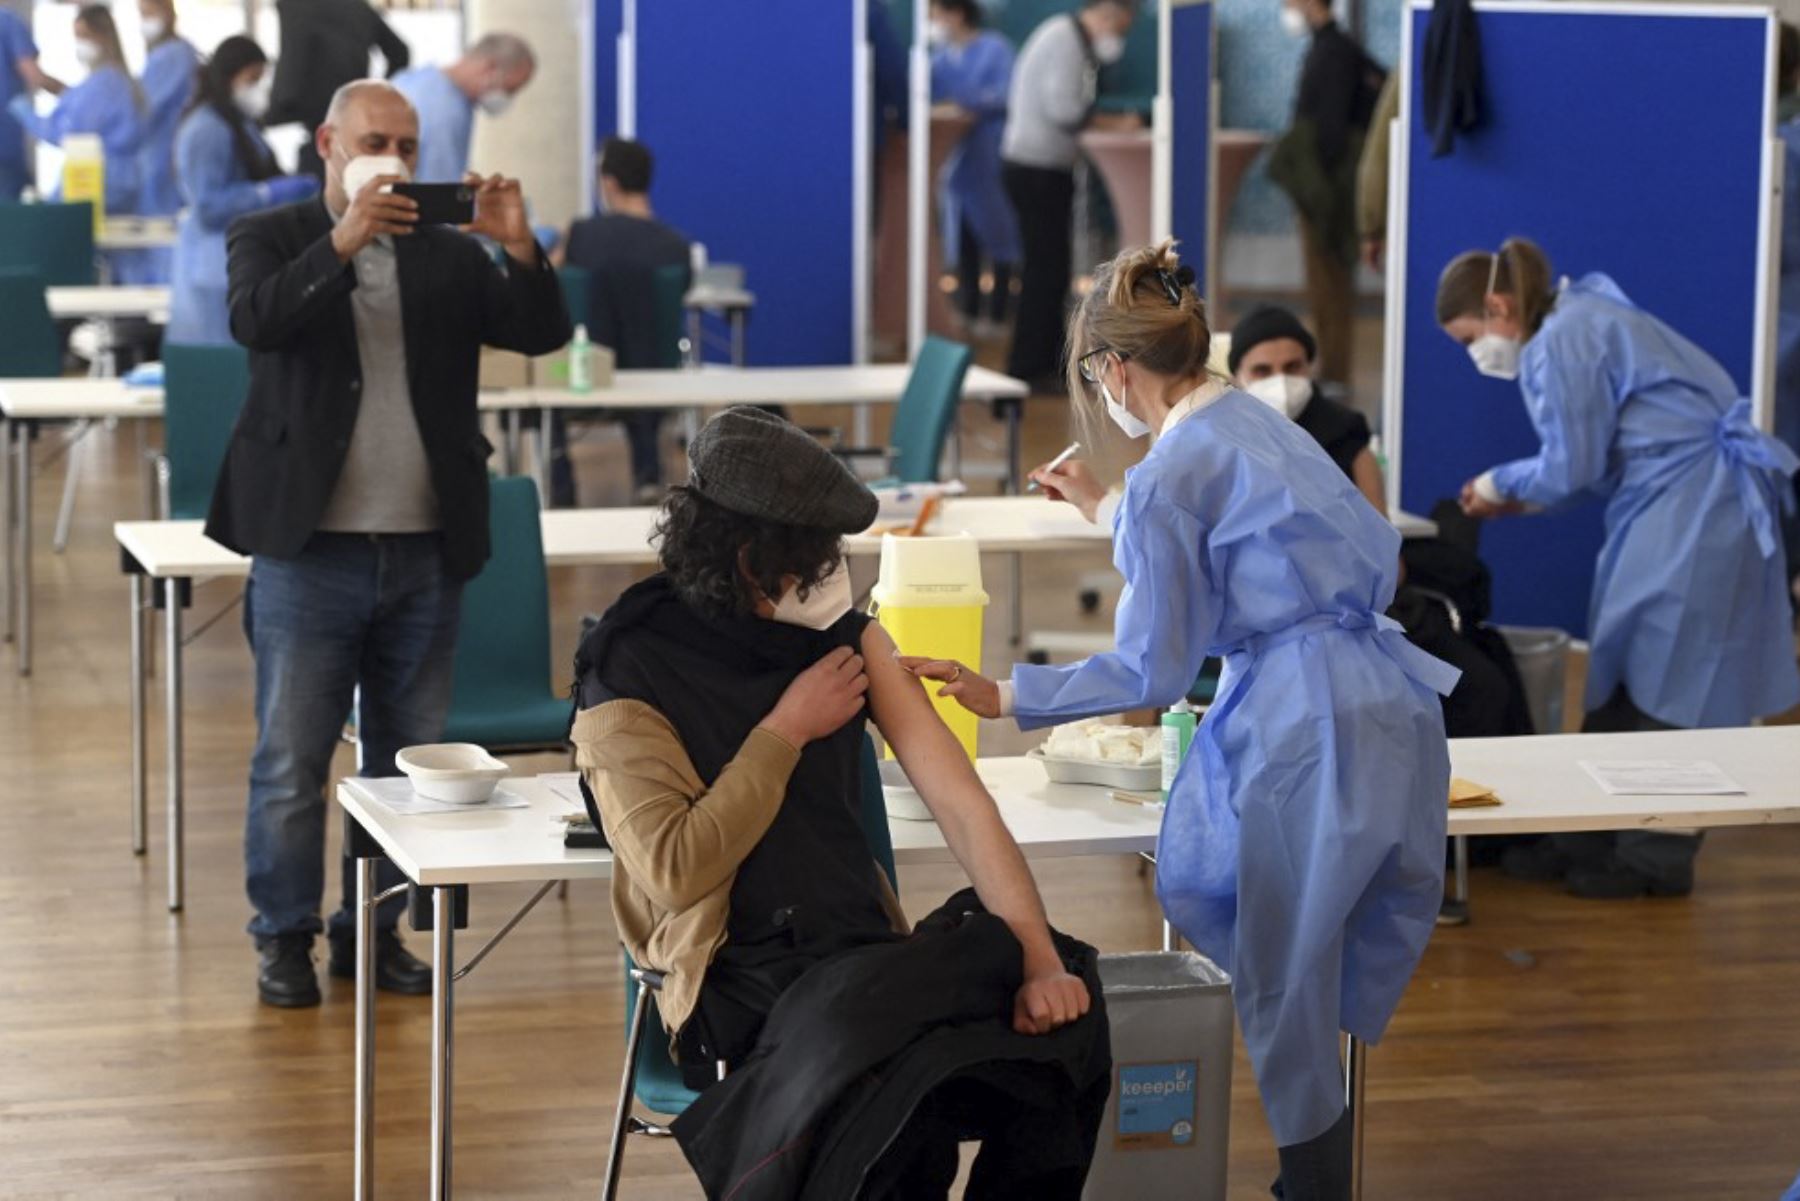 Alemania ha registrado una nueva marca de vacunaciones, con 1,35 millones de dosis en un día, informaron las autoridades sanitarias hoy, día en que además la incidencia semanal cayó por debajo de los 100 casos por 100.000 habitantes por primera vez en dos meses. Foto: AFP